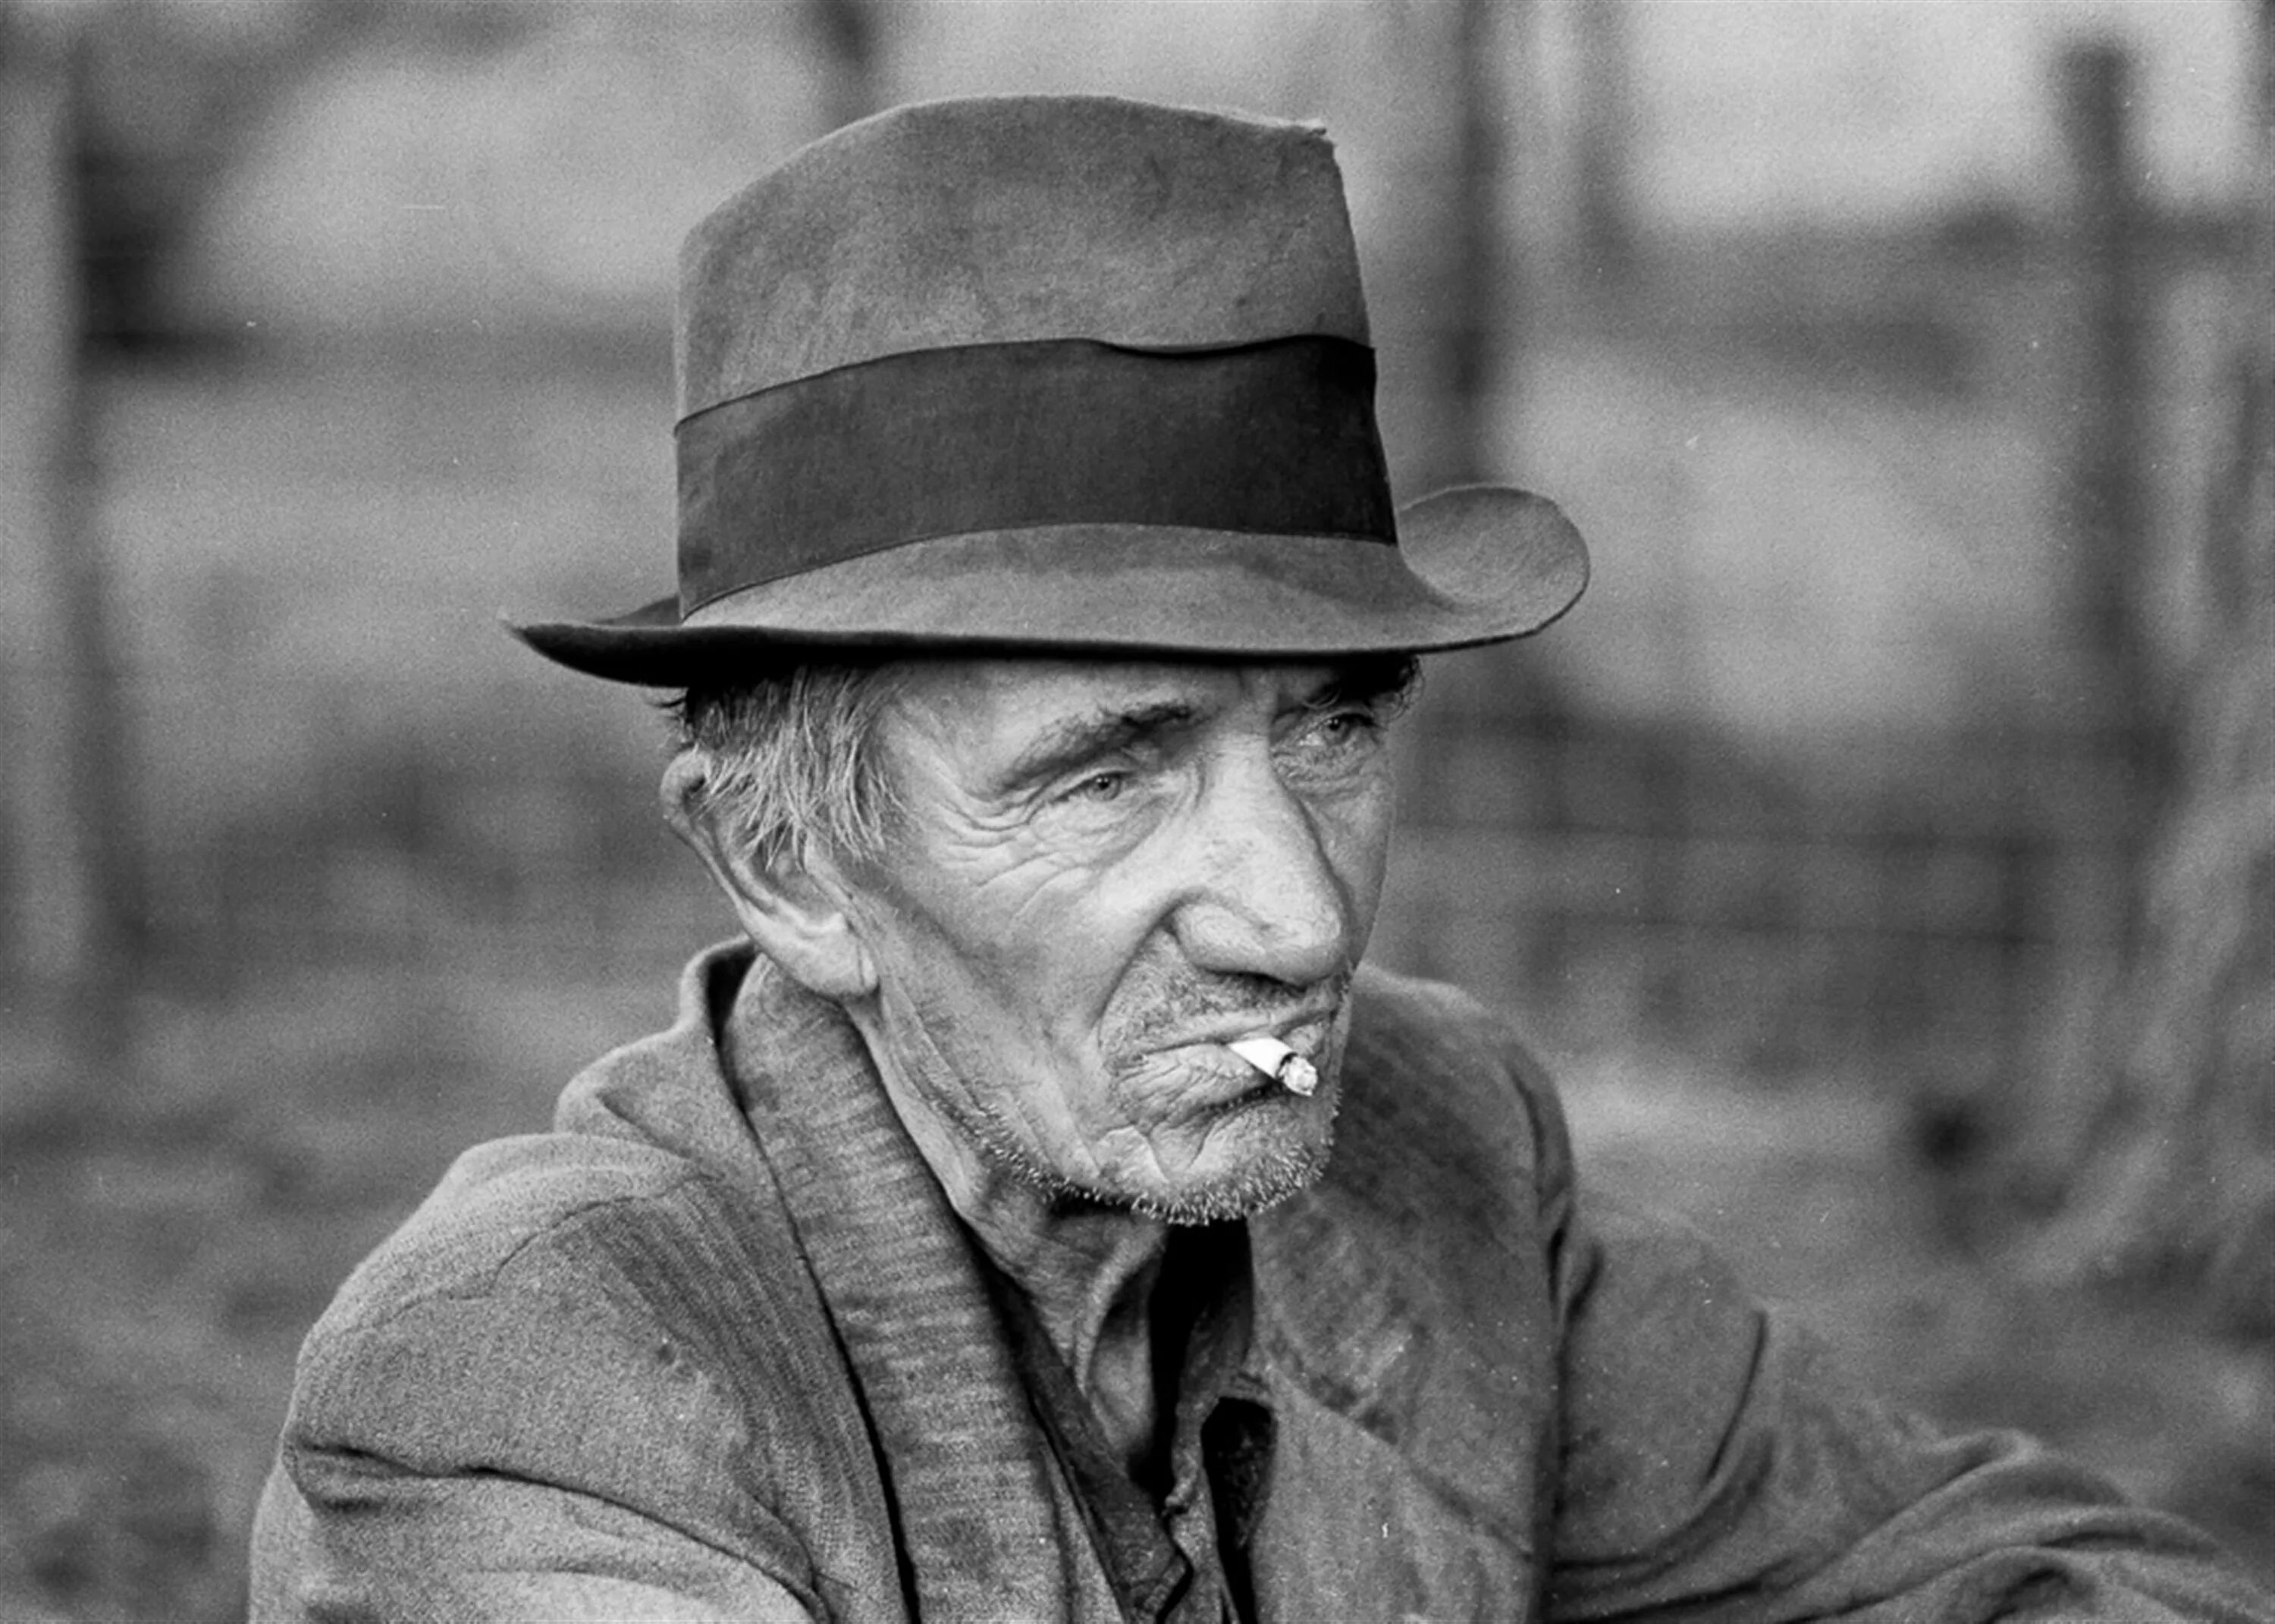 Old society. Килгор Траут Курт Воннегут. Пожилой мужчина в шляпе. Старые портреты. Портрет пожилого мужчины.